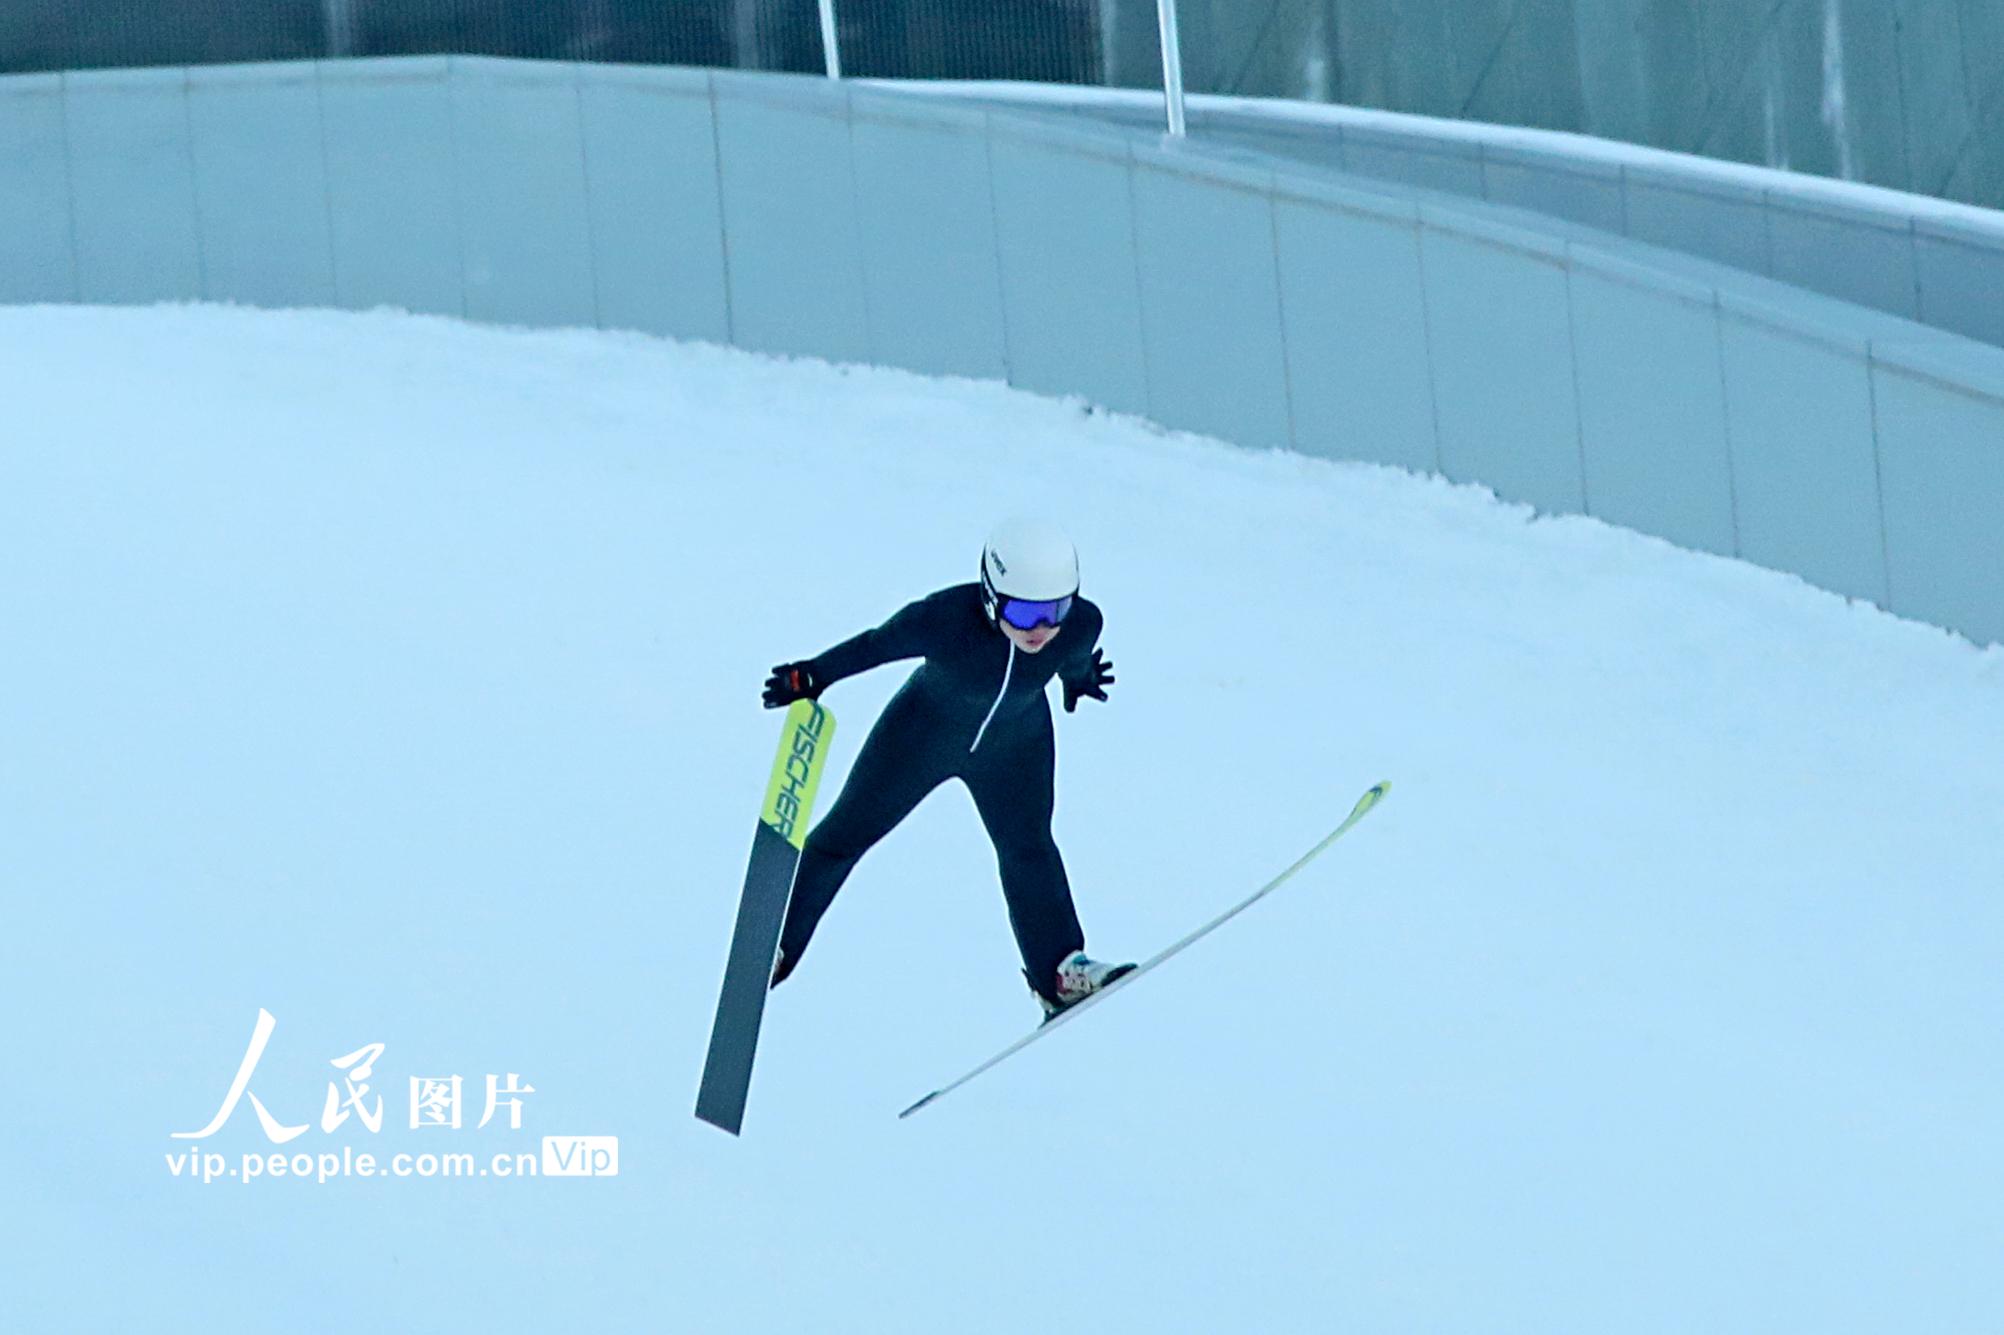 北京2022年冬奧會張家口賽區國家跳台滑雪中心迎來首日試滑【4】